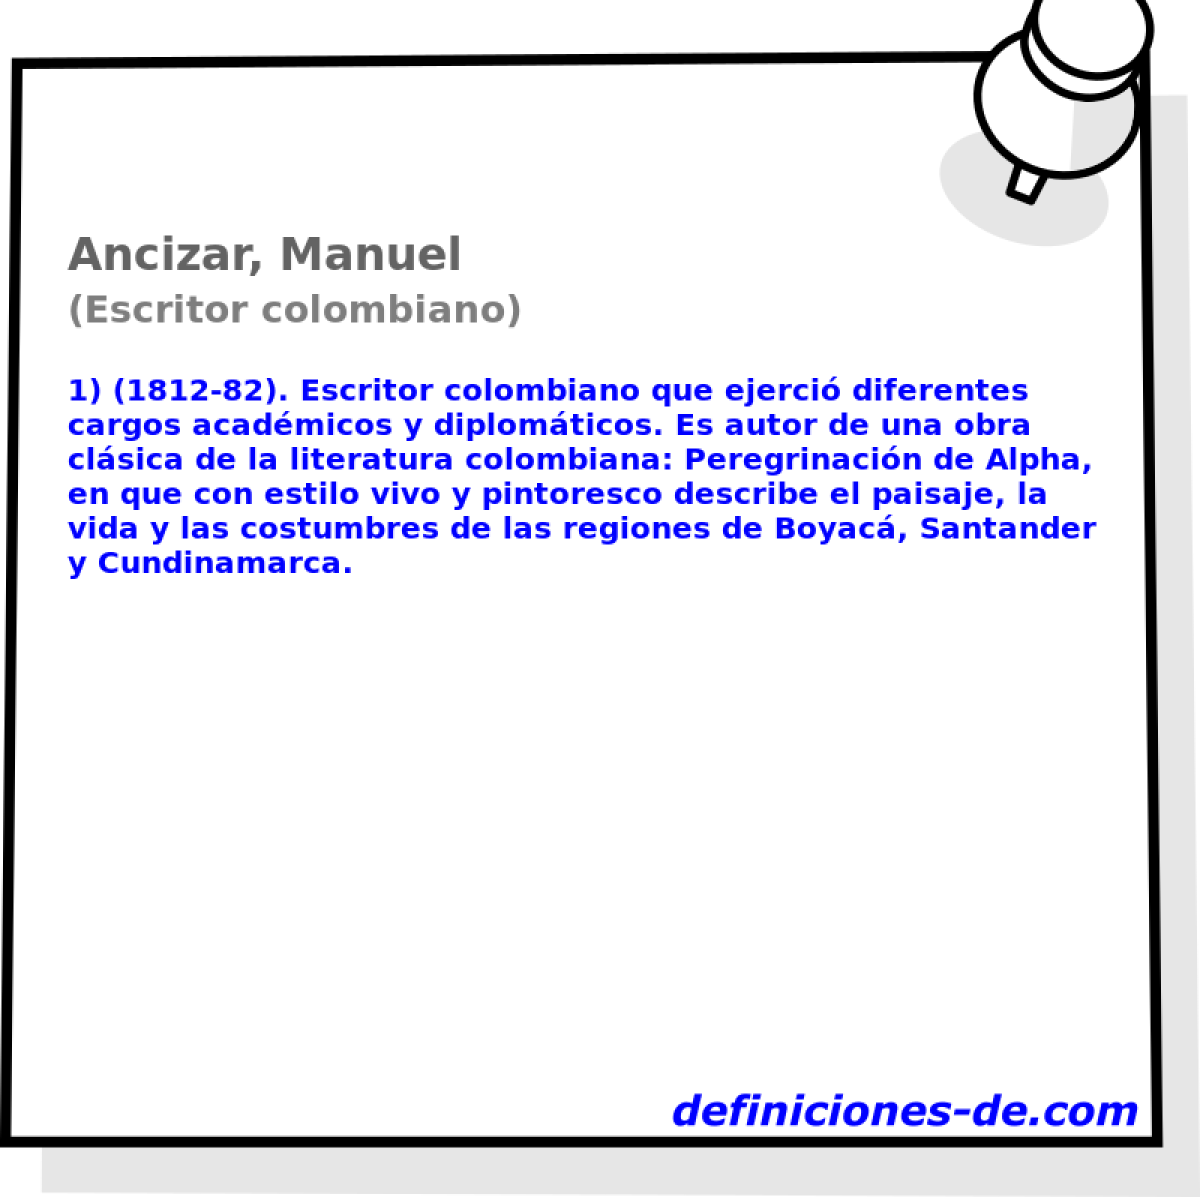 Ancizar, Manuel (Escritor colombiano)